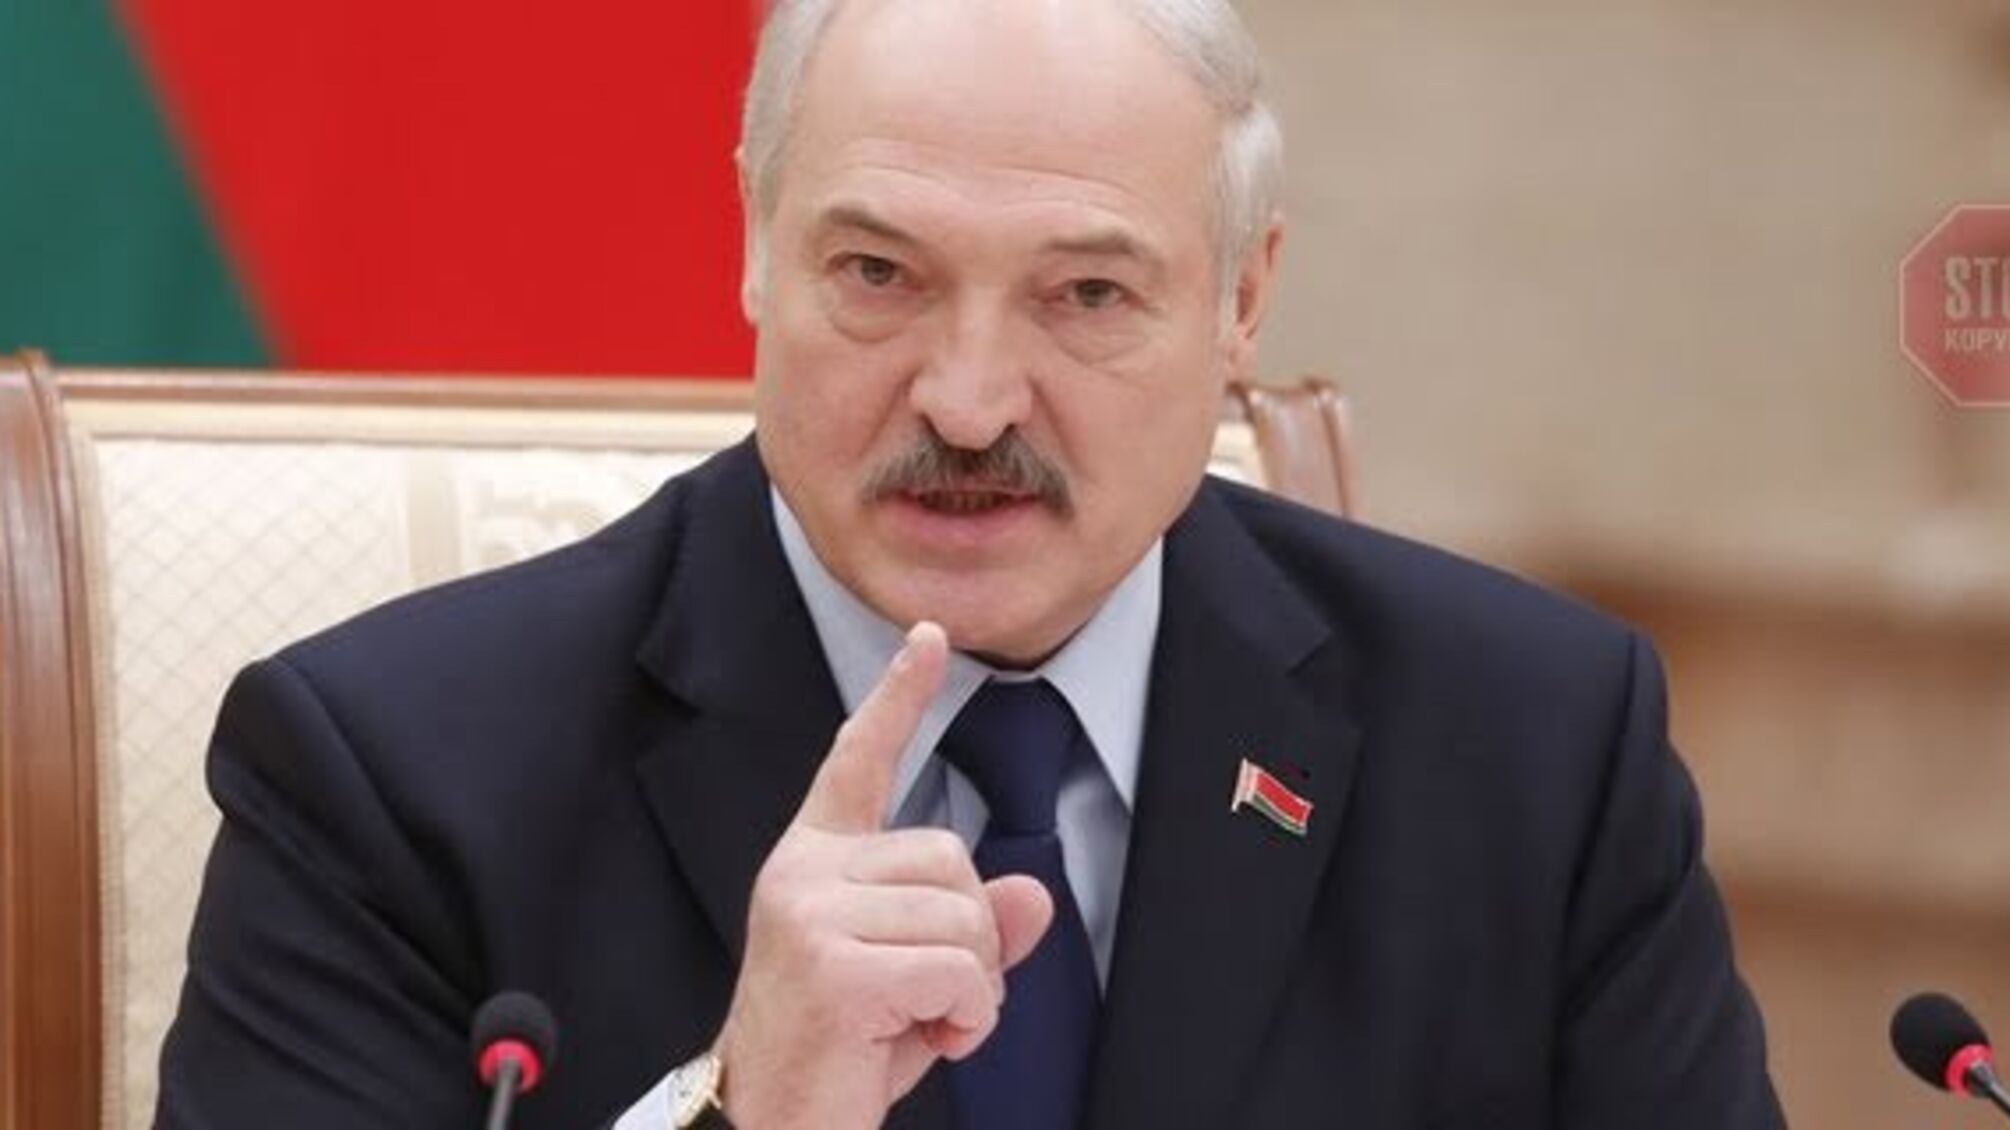 'Ми ще м'яко обійшлися' - Лукашенко про розгін протестувальників